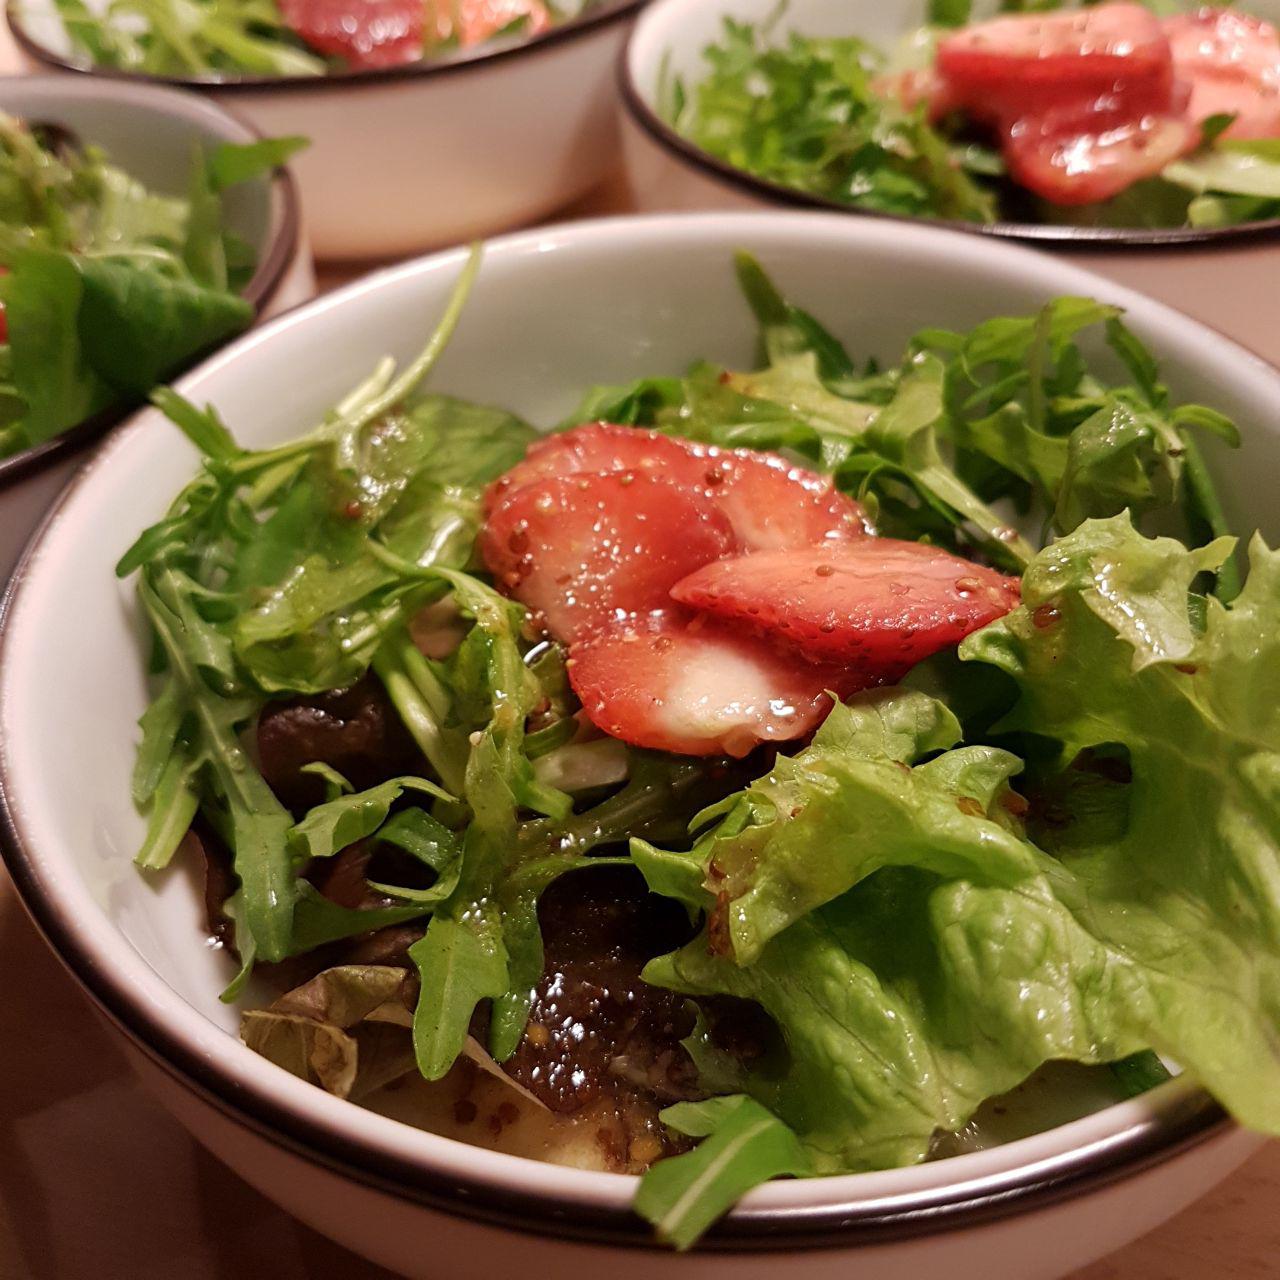 Blattsalat mit Erdbeer-Senfdressing - vegan und munter